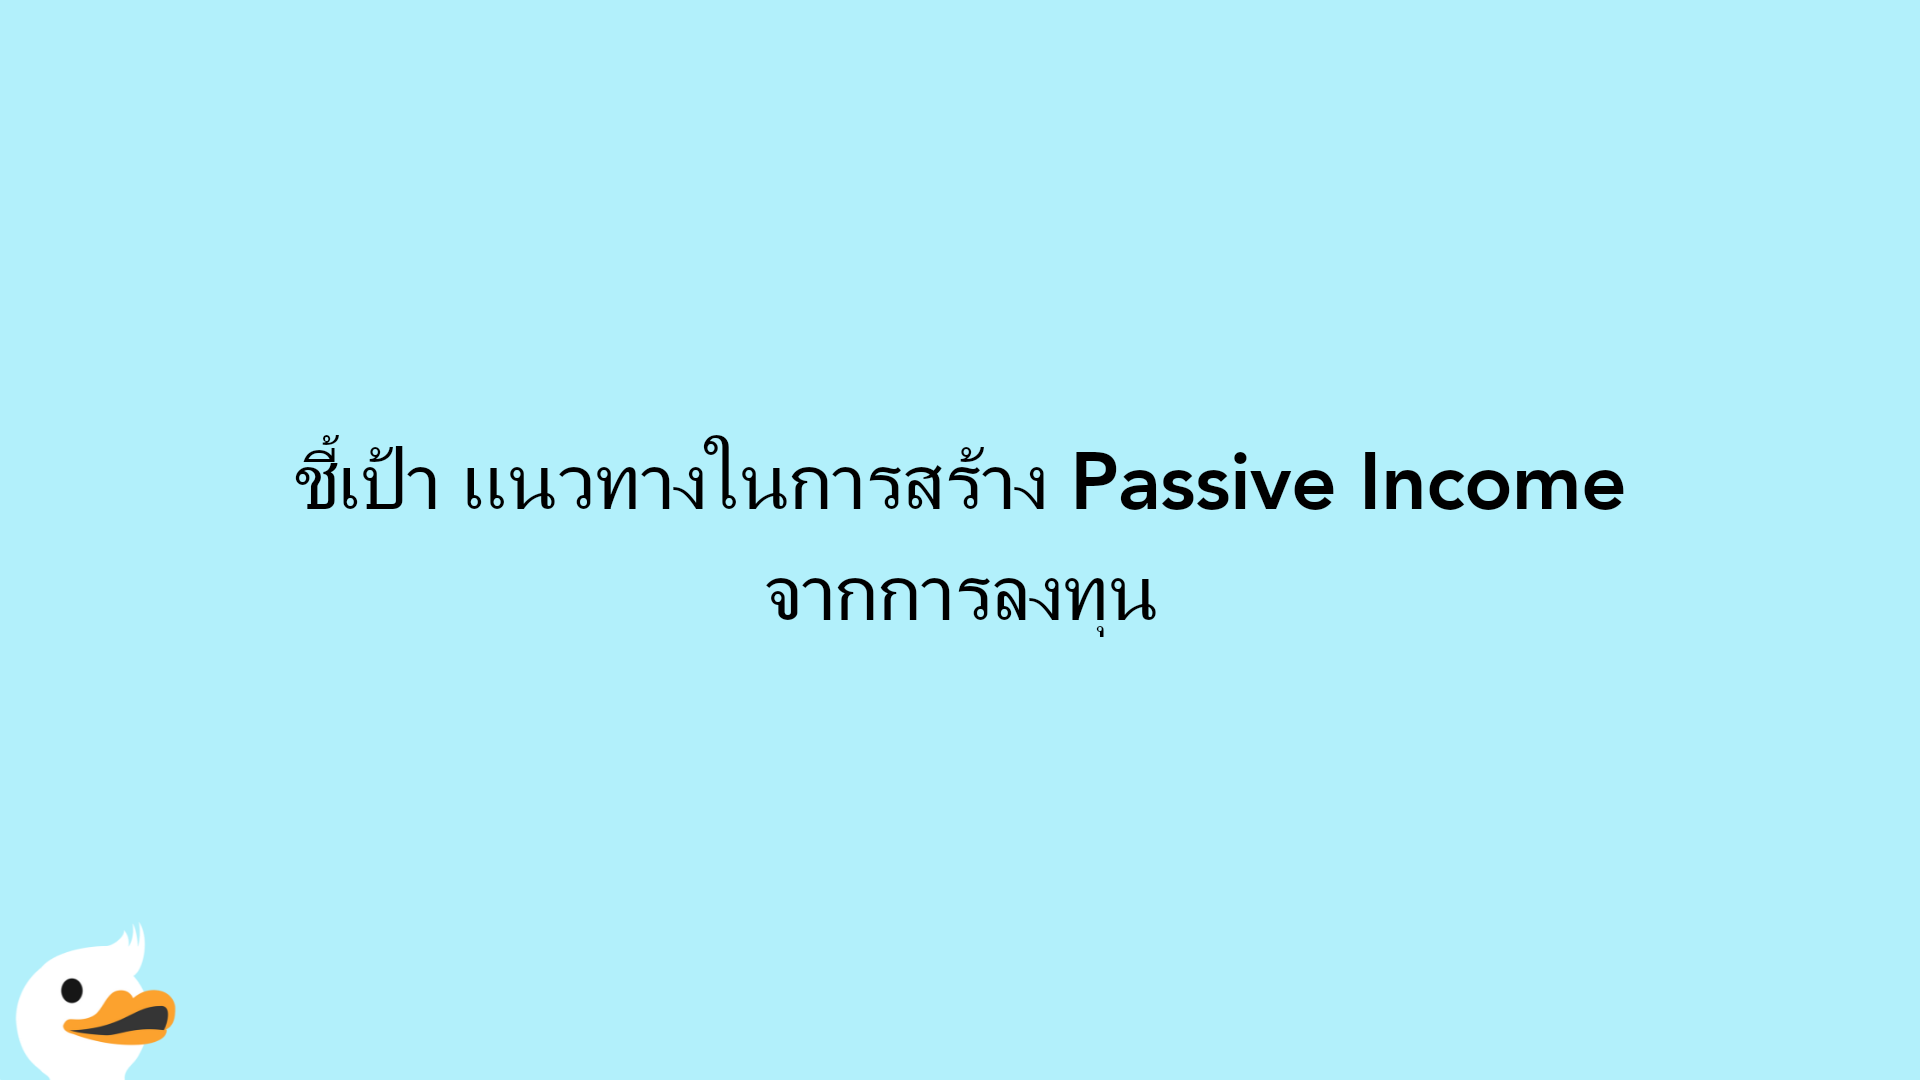 ชี้เป้า แนวทางในการสร้าง Passive Income จากการลงทุน